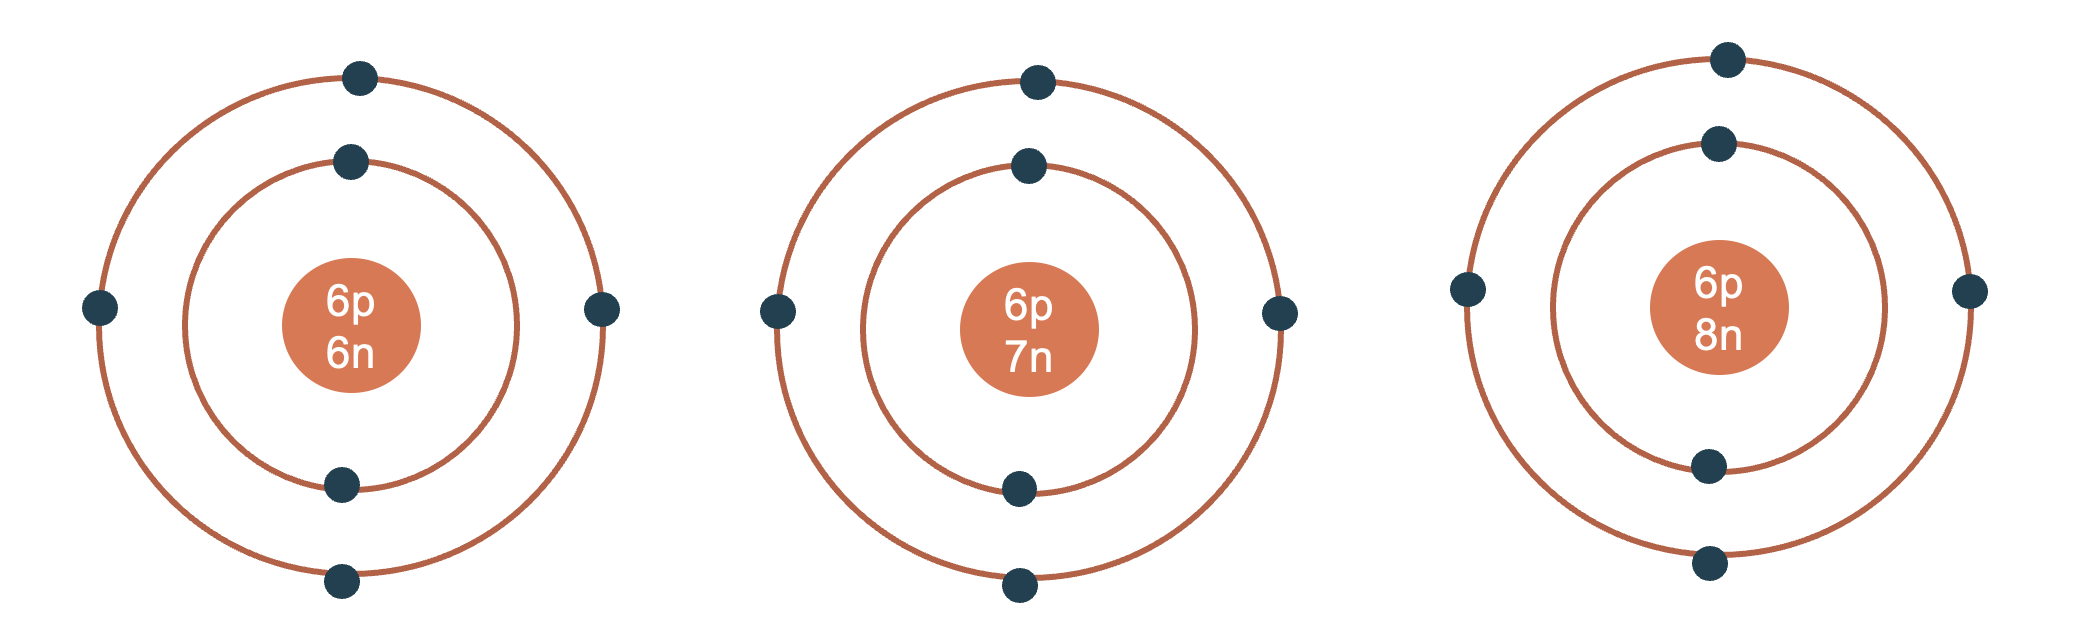 Dựa vào hình 34 hãy cho biết một số thông tin về nguyên tố natri và argon  số hiệu nguyên tử điện tích hạt nhân số lớp electron chu kì số electron